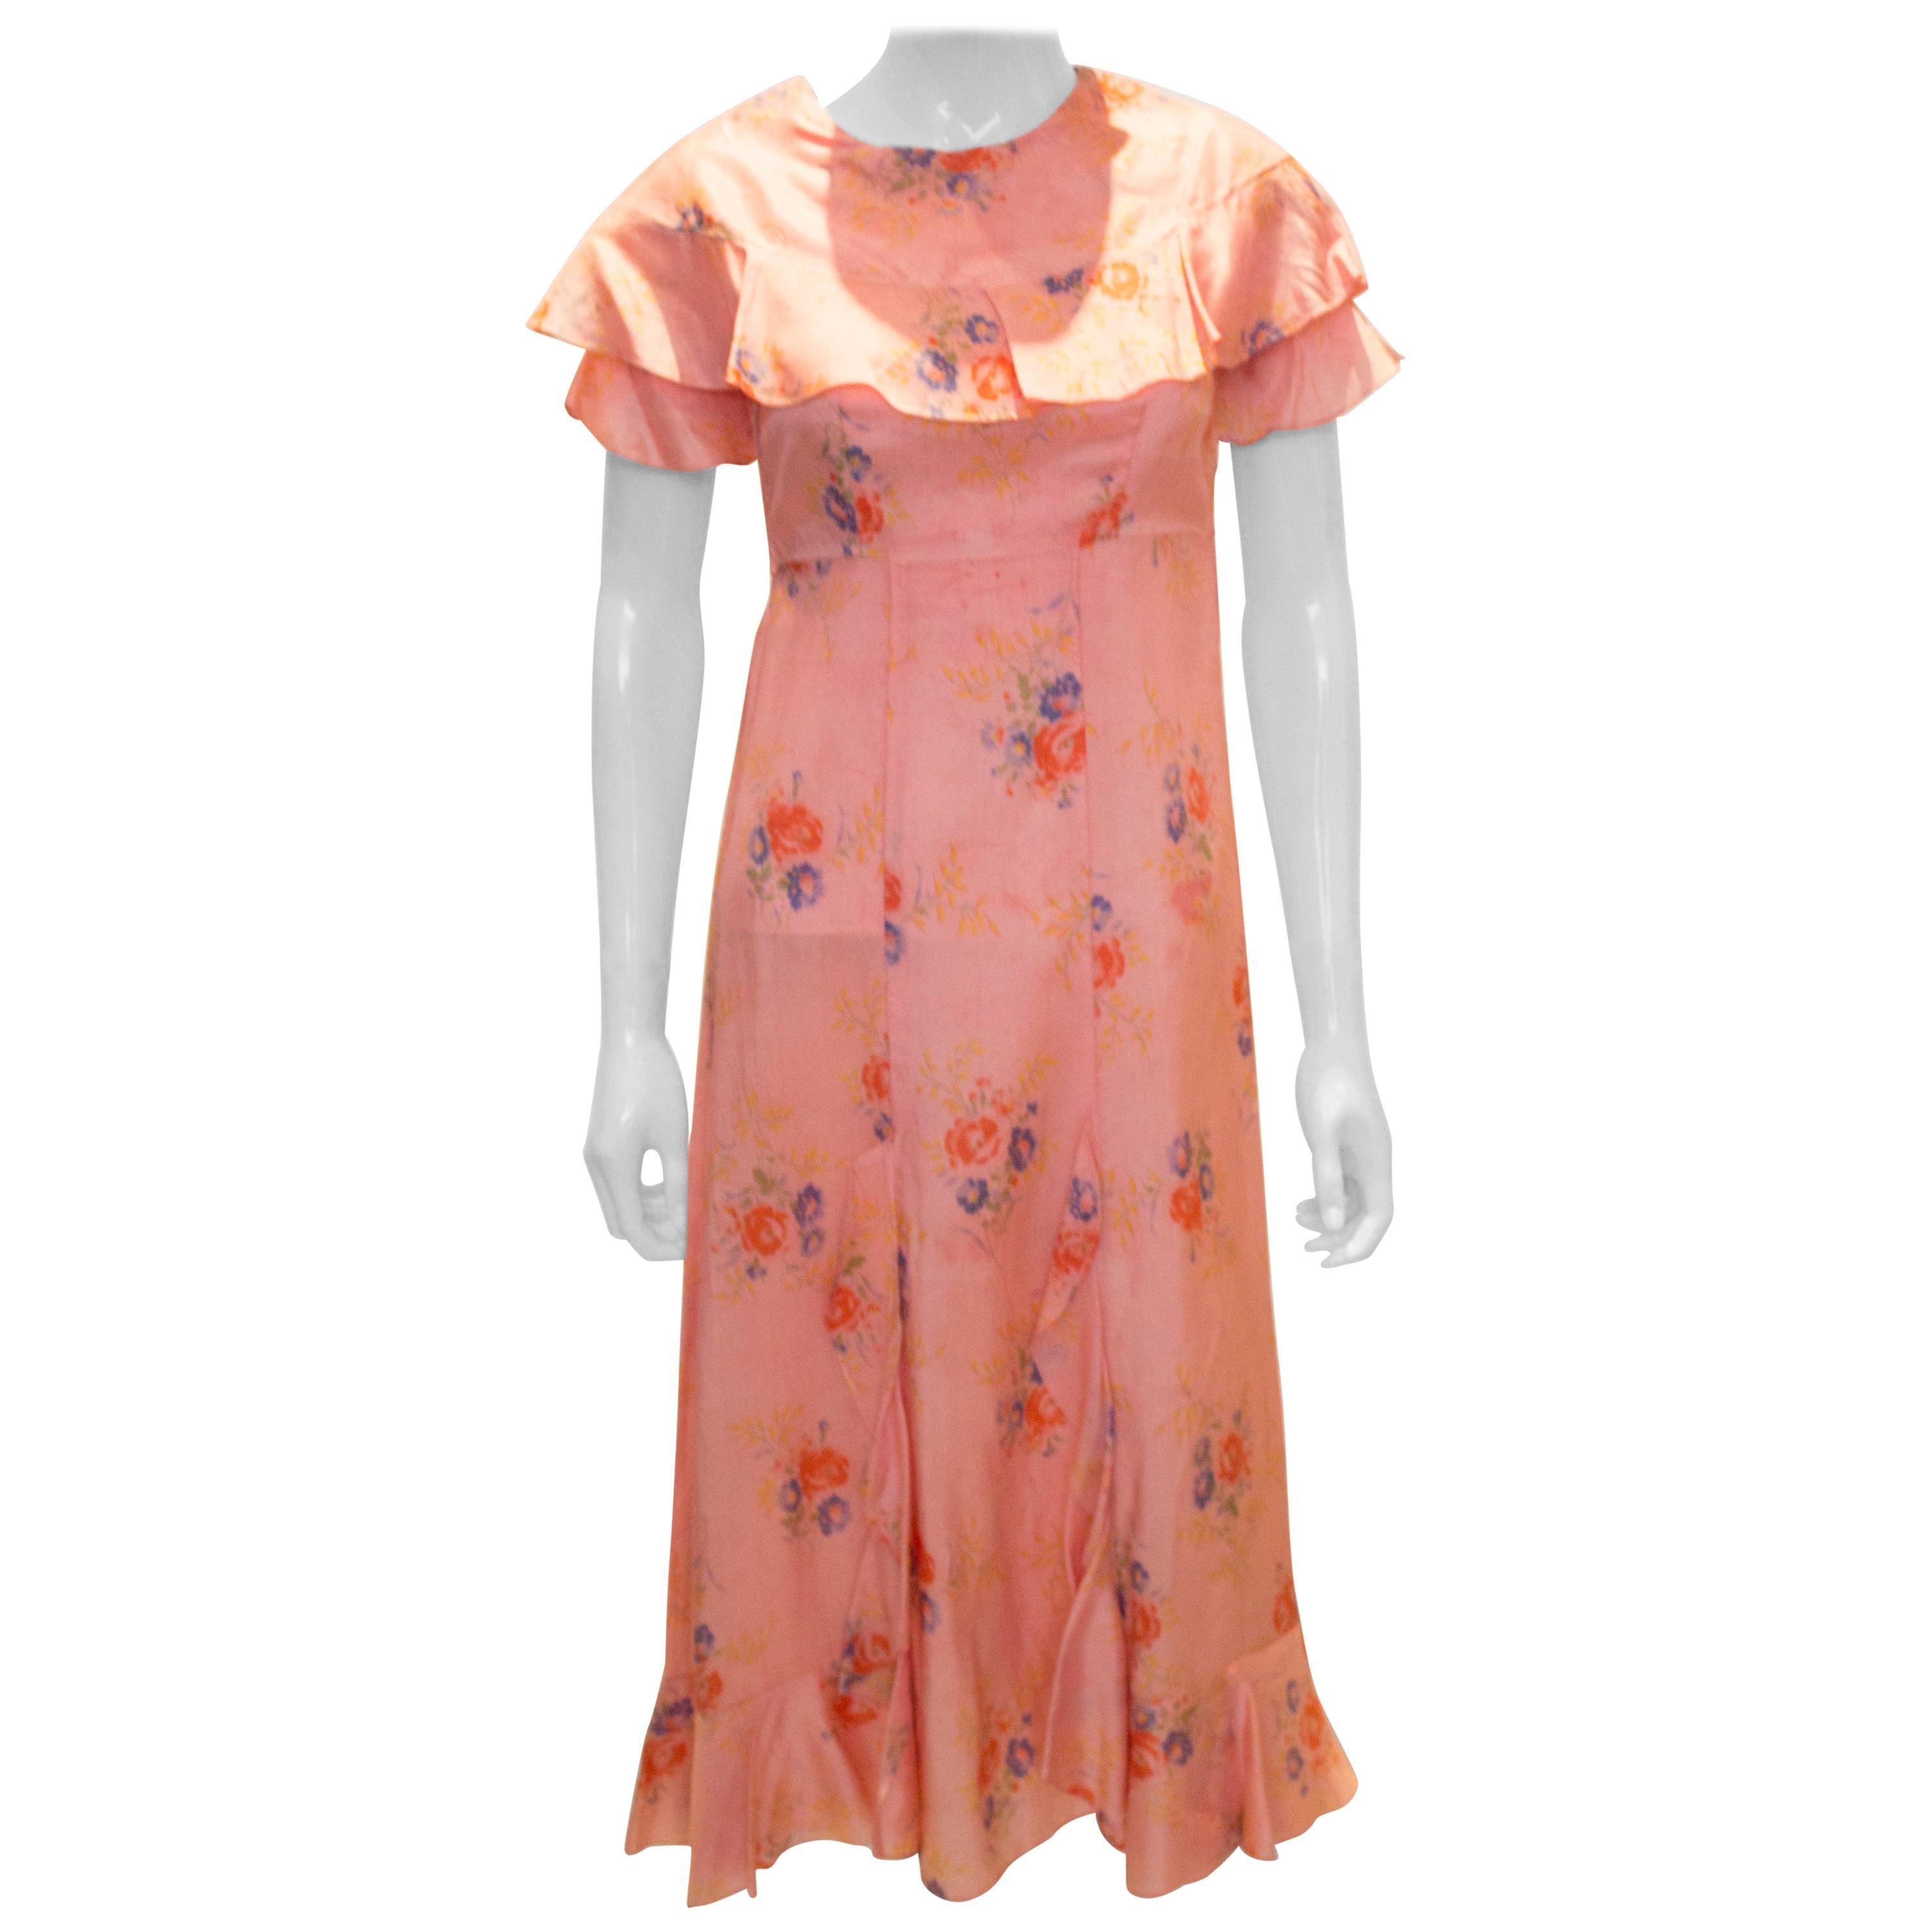 Vintage 1940s Floral Dress